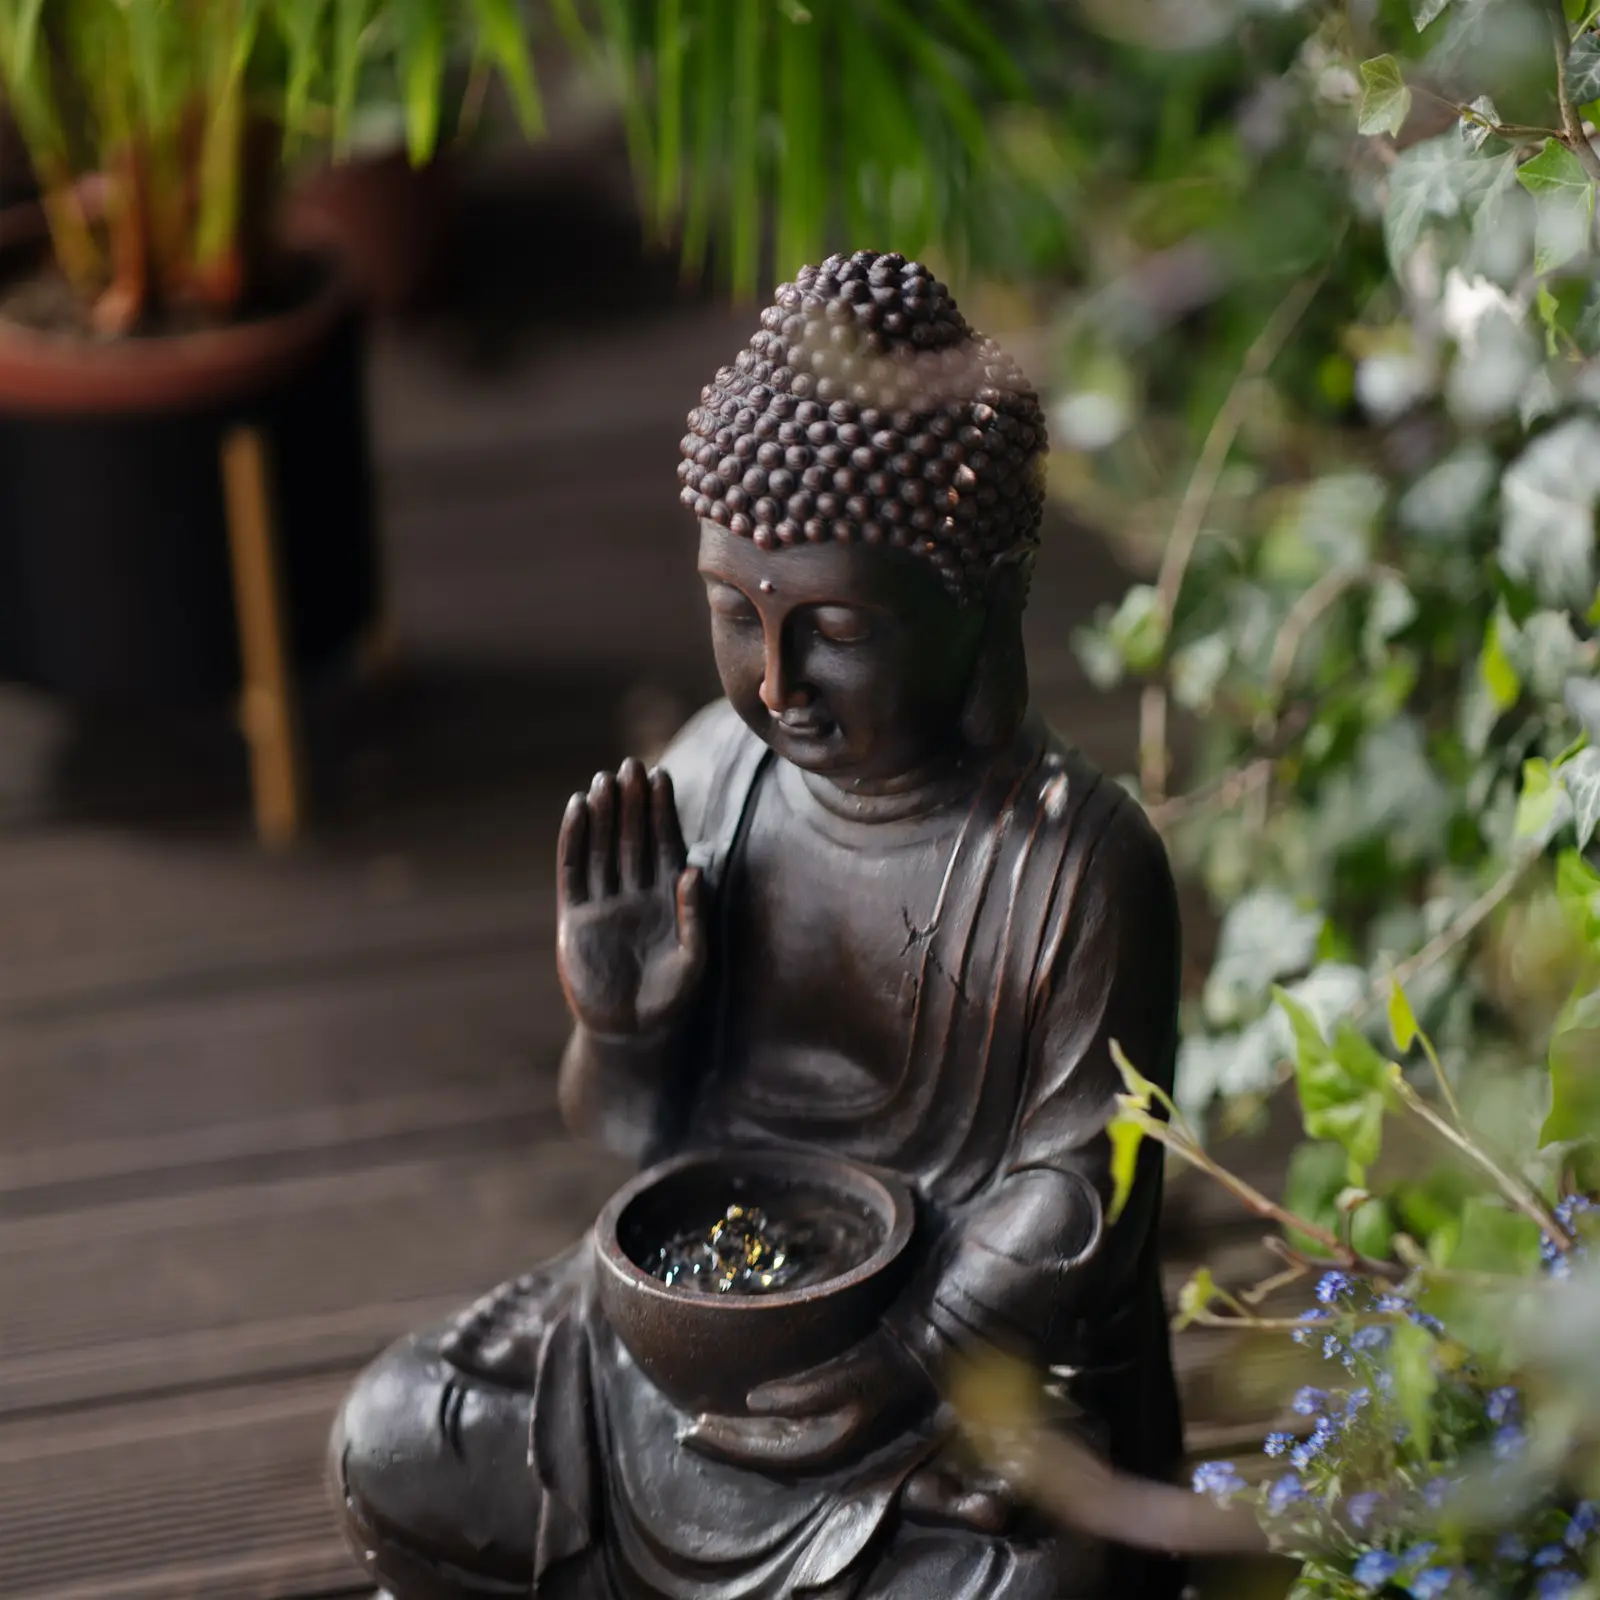 Solar Gartenbrunnen - grüßende Buddhafigur - LED-Beleuchtung